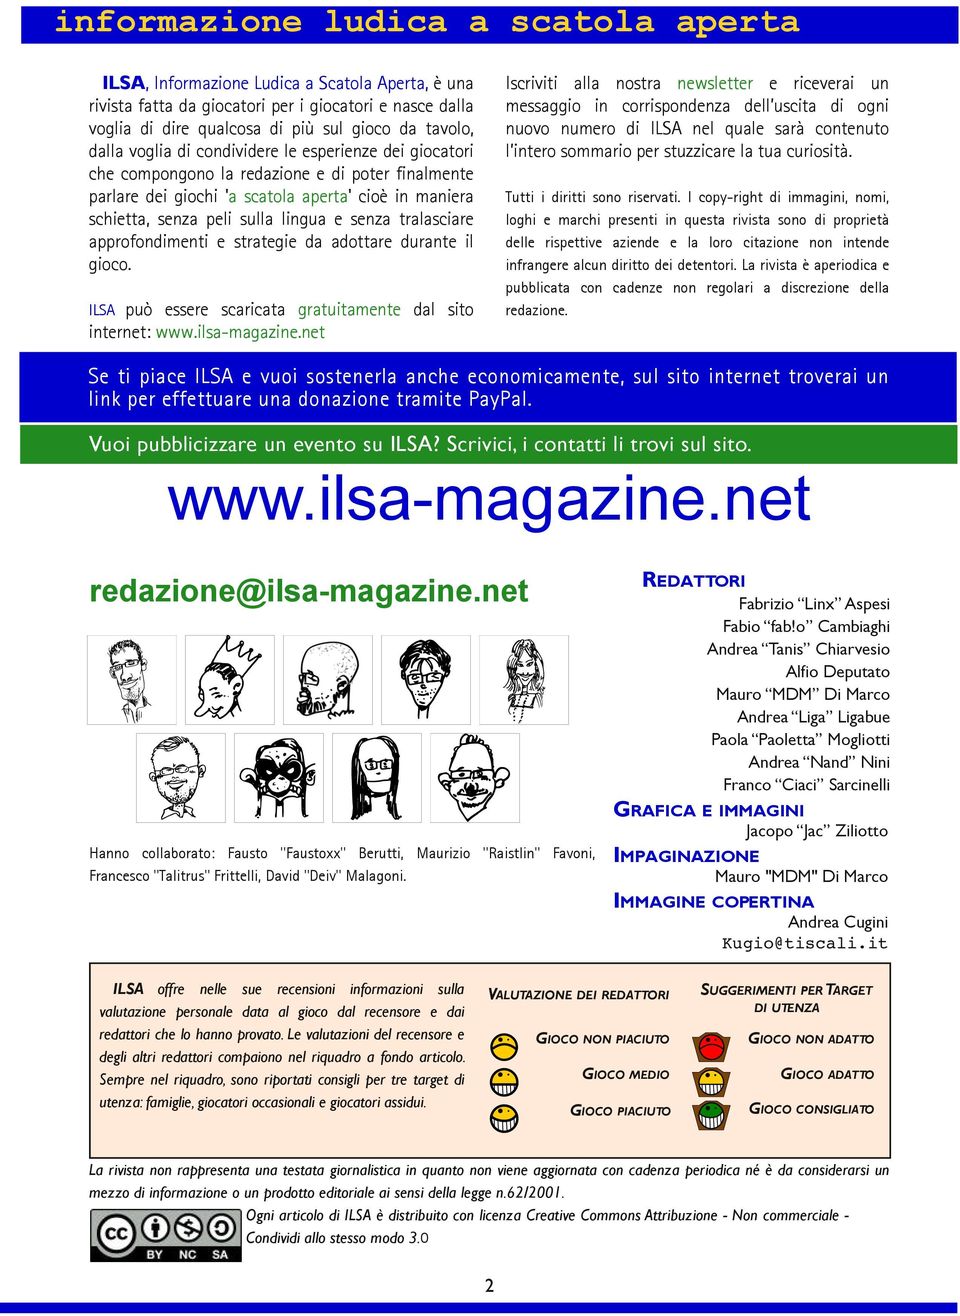 senza tralasciare approfondimenti e strategie da adottare durante il gioco. ILSA può essere scaricata gratuitamente dal sito internet: www.ilsa-magazine.